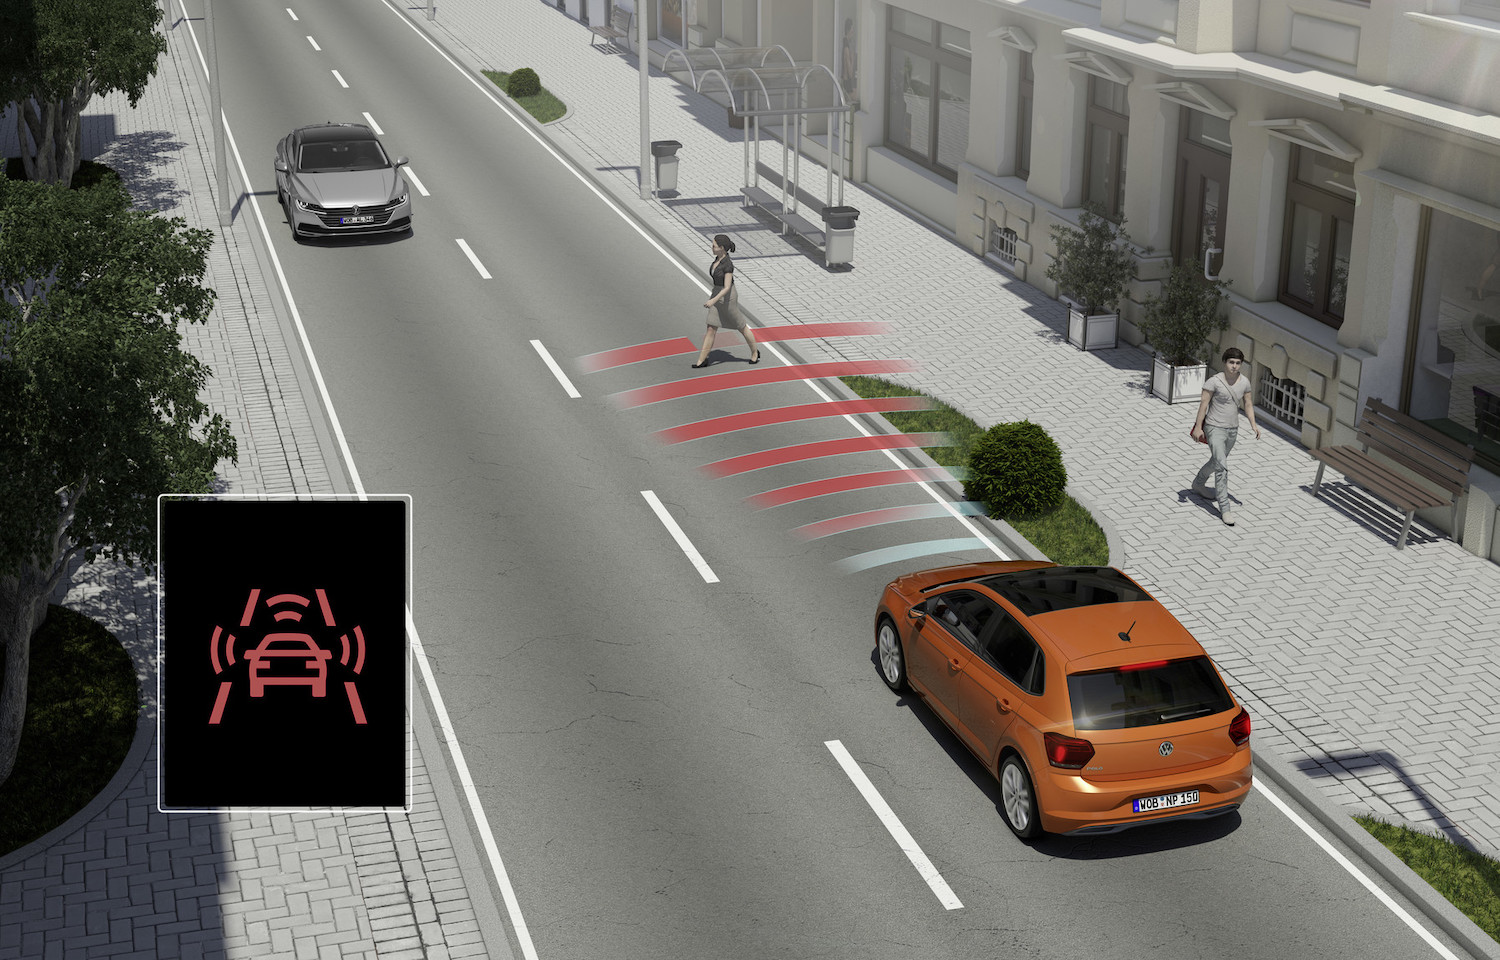 2020 年式 Polo 全車系標配 Front Assist 車前碰撞預警系統、前方行人監測和全速域 ACC 主動式固定車距巡航系統。